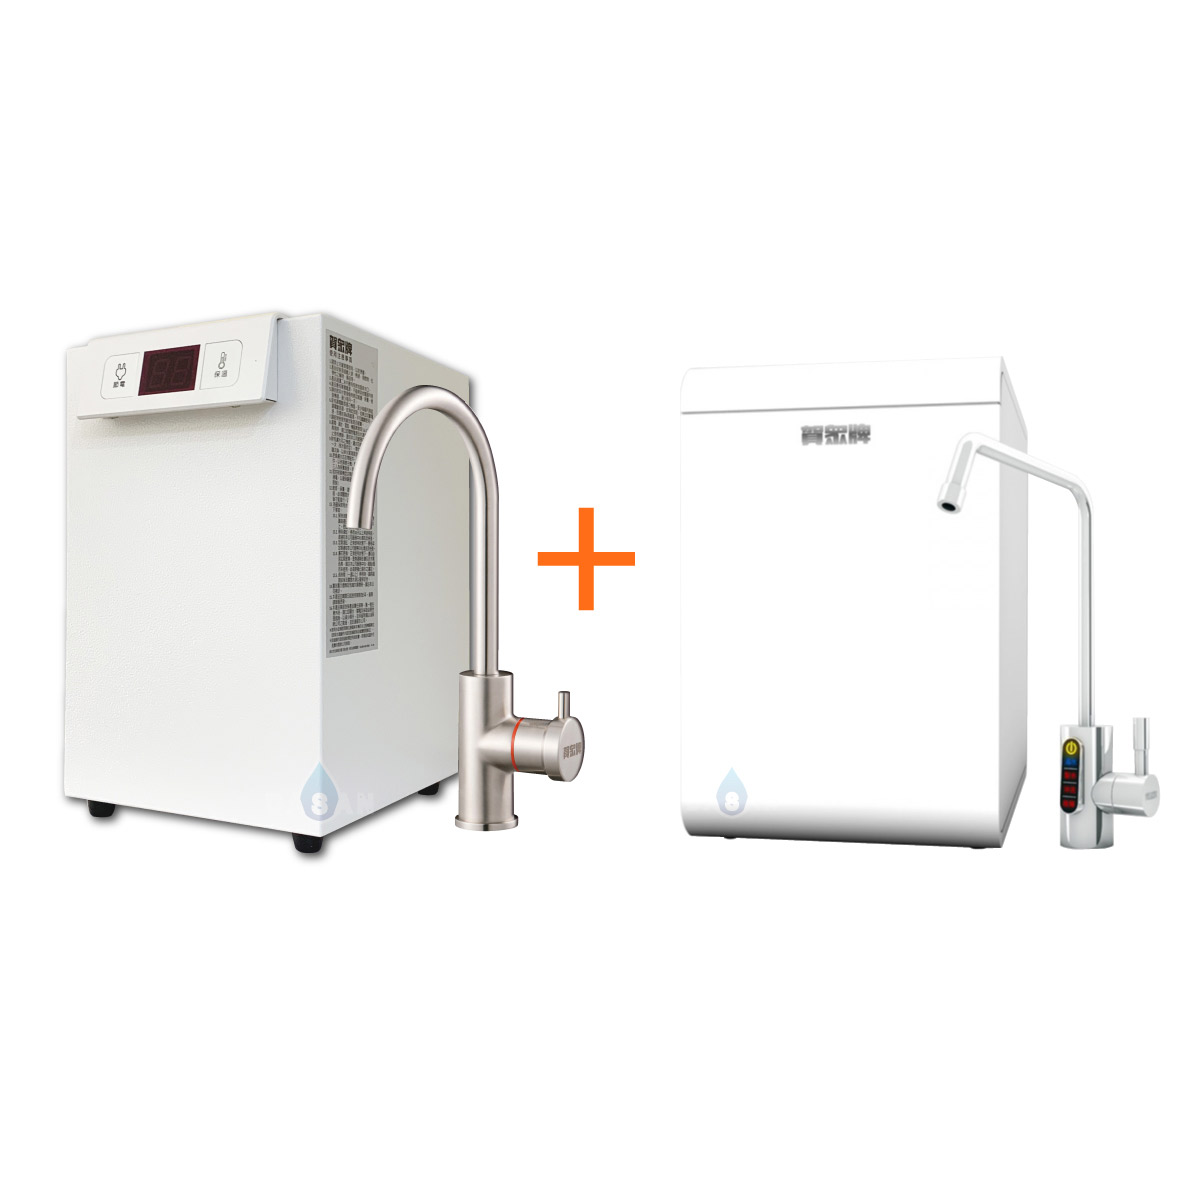 【賀眾牌】UW-2202HW-1廚下型節能冷熱飲水機加熱器+UR-5802JW-1廚下輕巧型微電腦純水機